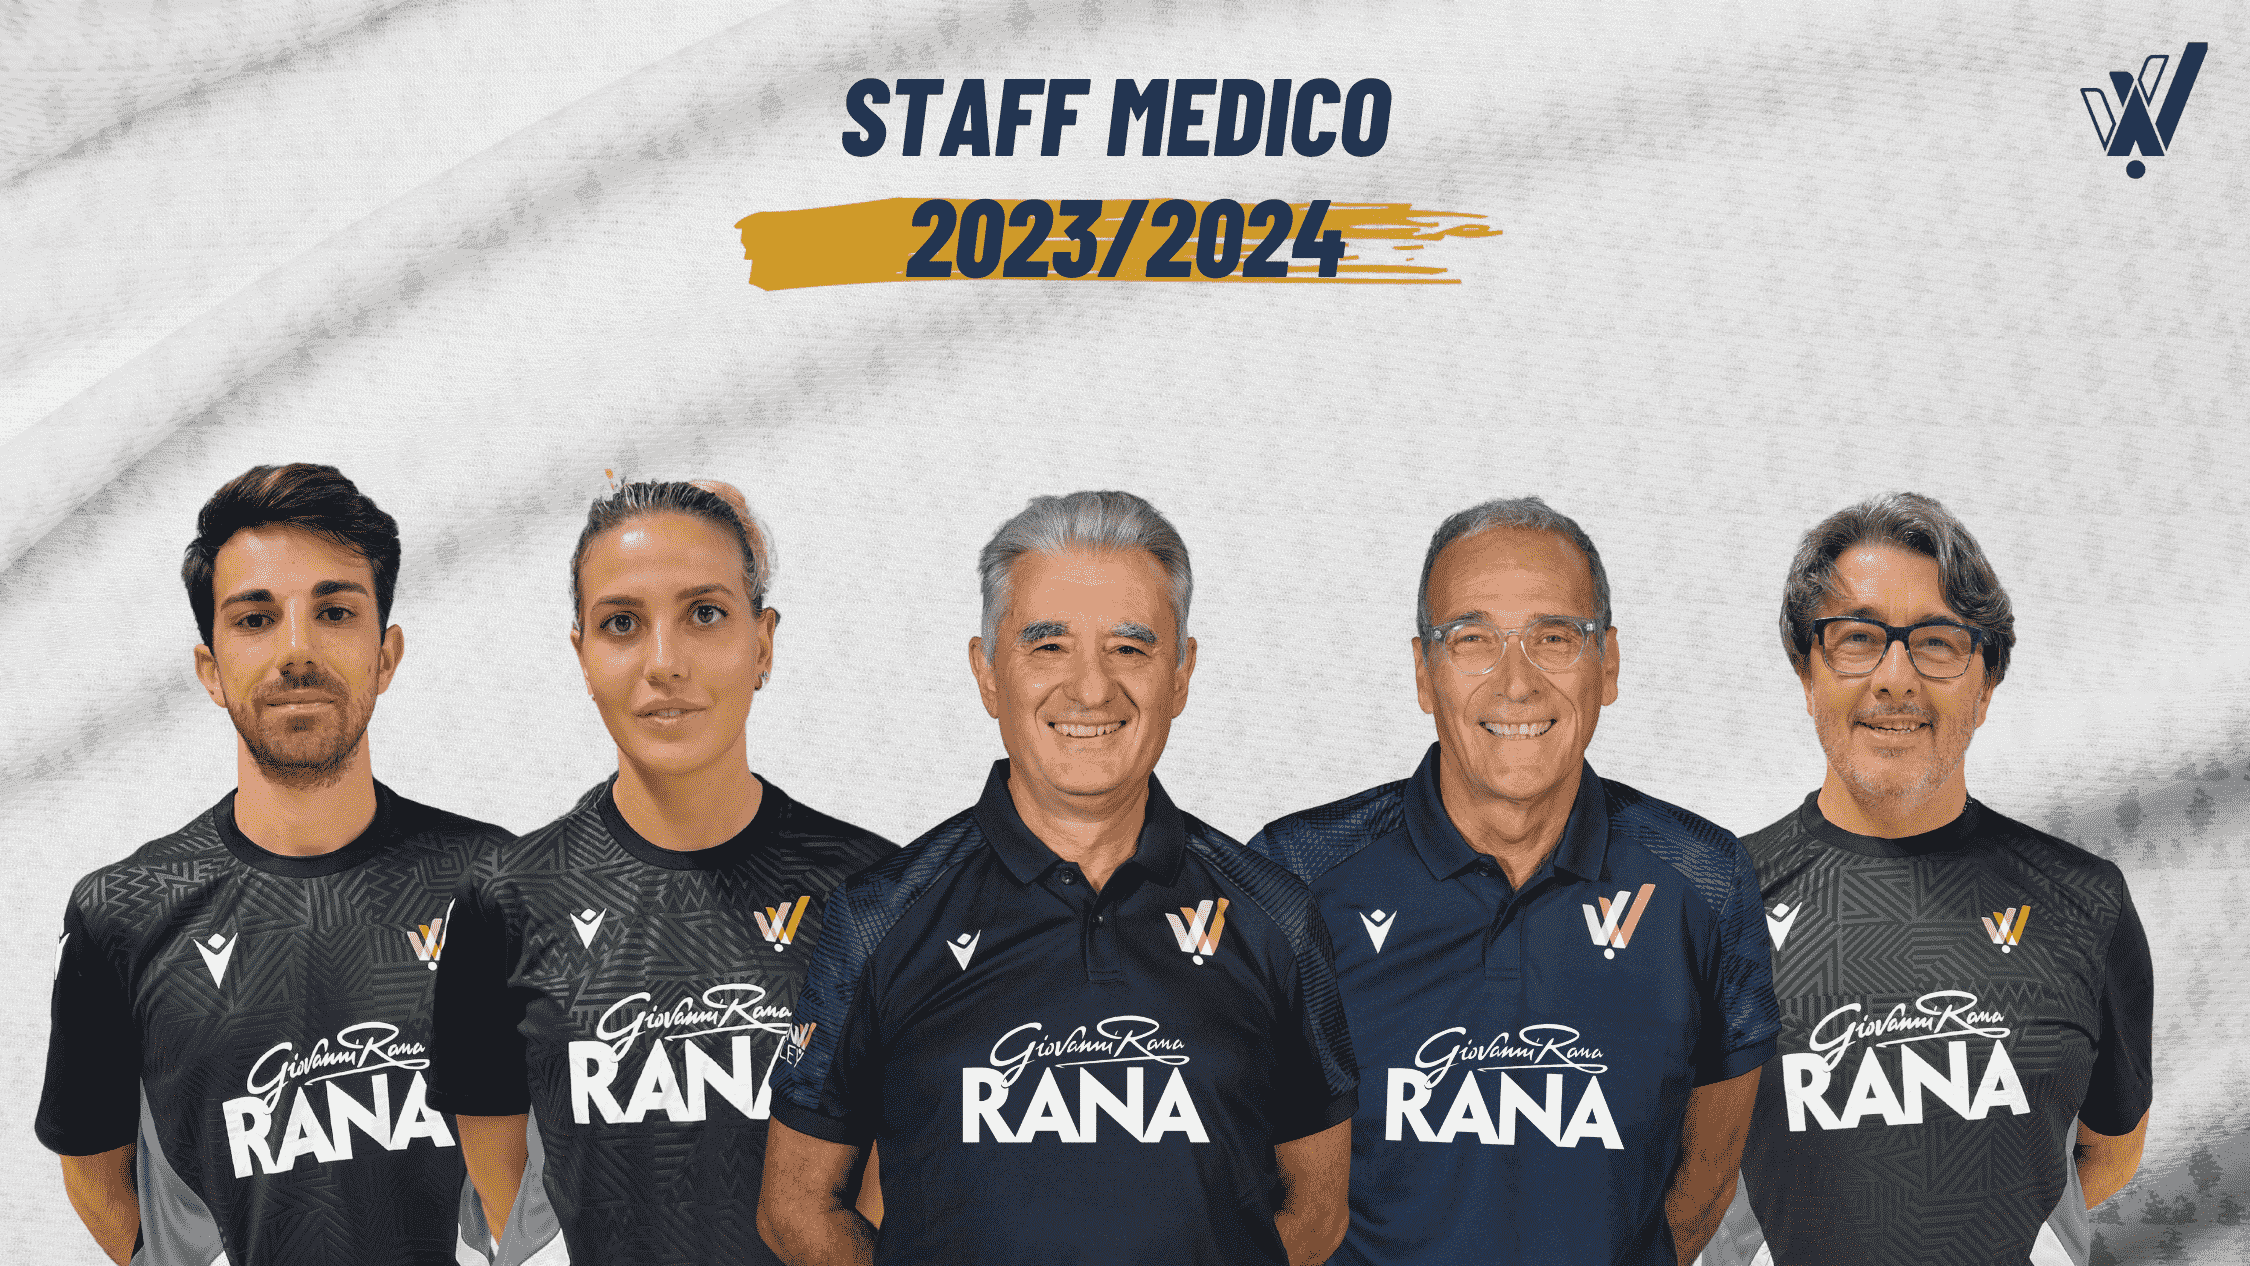 Verona Volley: definito lo staff medico e fisioterapico per la stagione 2023/2024